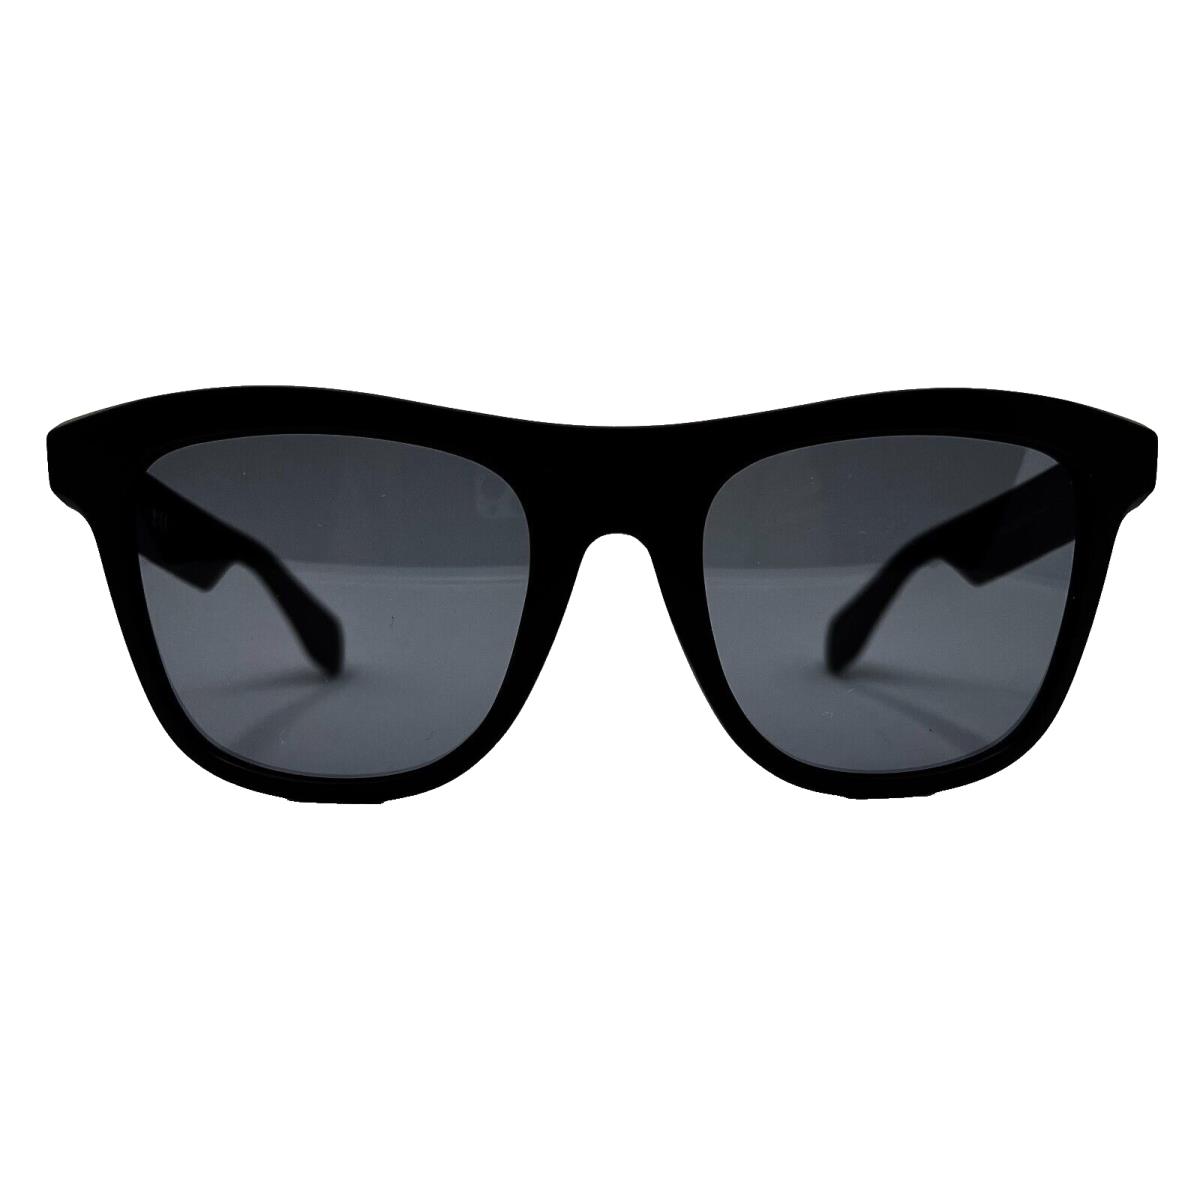 Adidas Originals - OR0057 02A 53/20/145 - Black Sunglasses Case